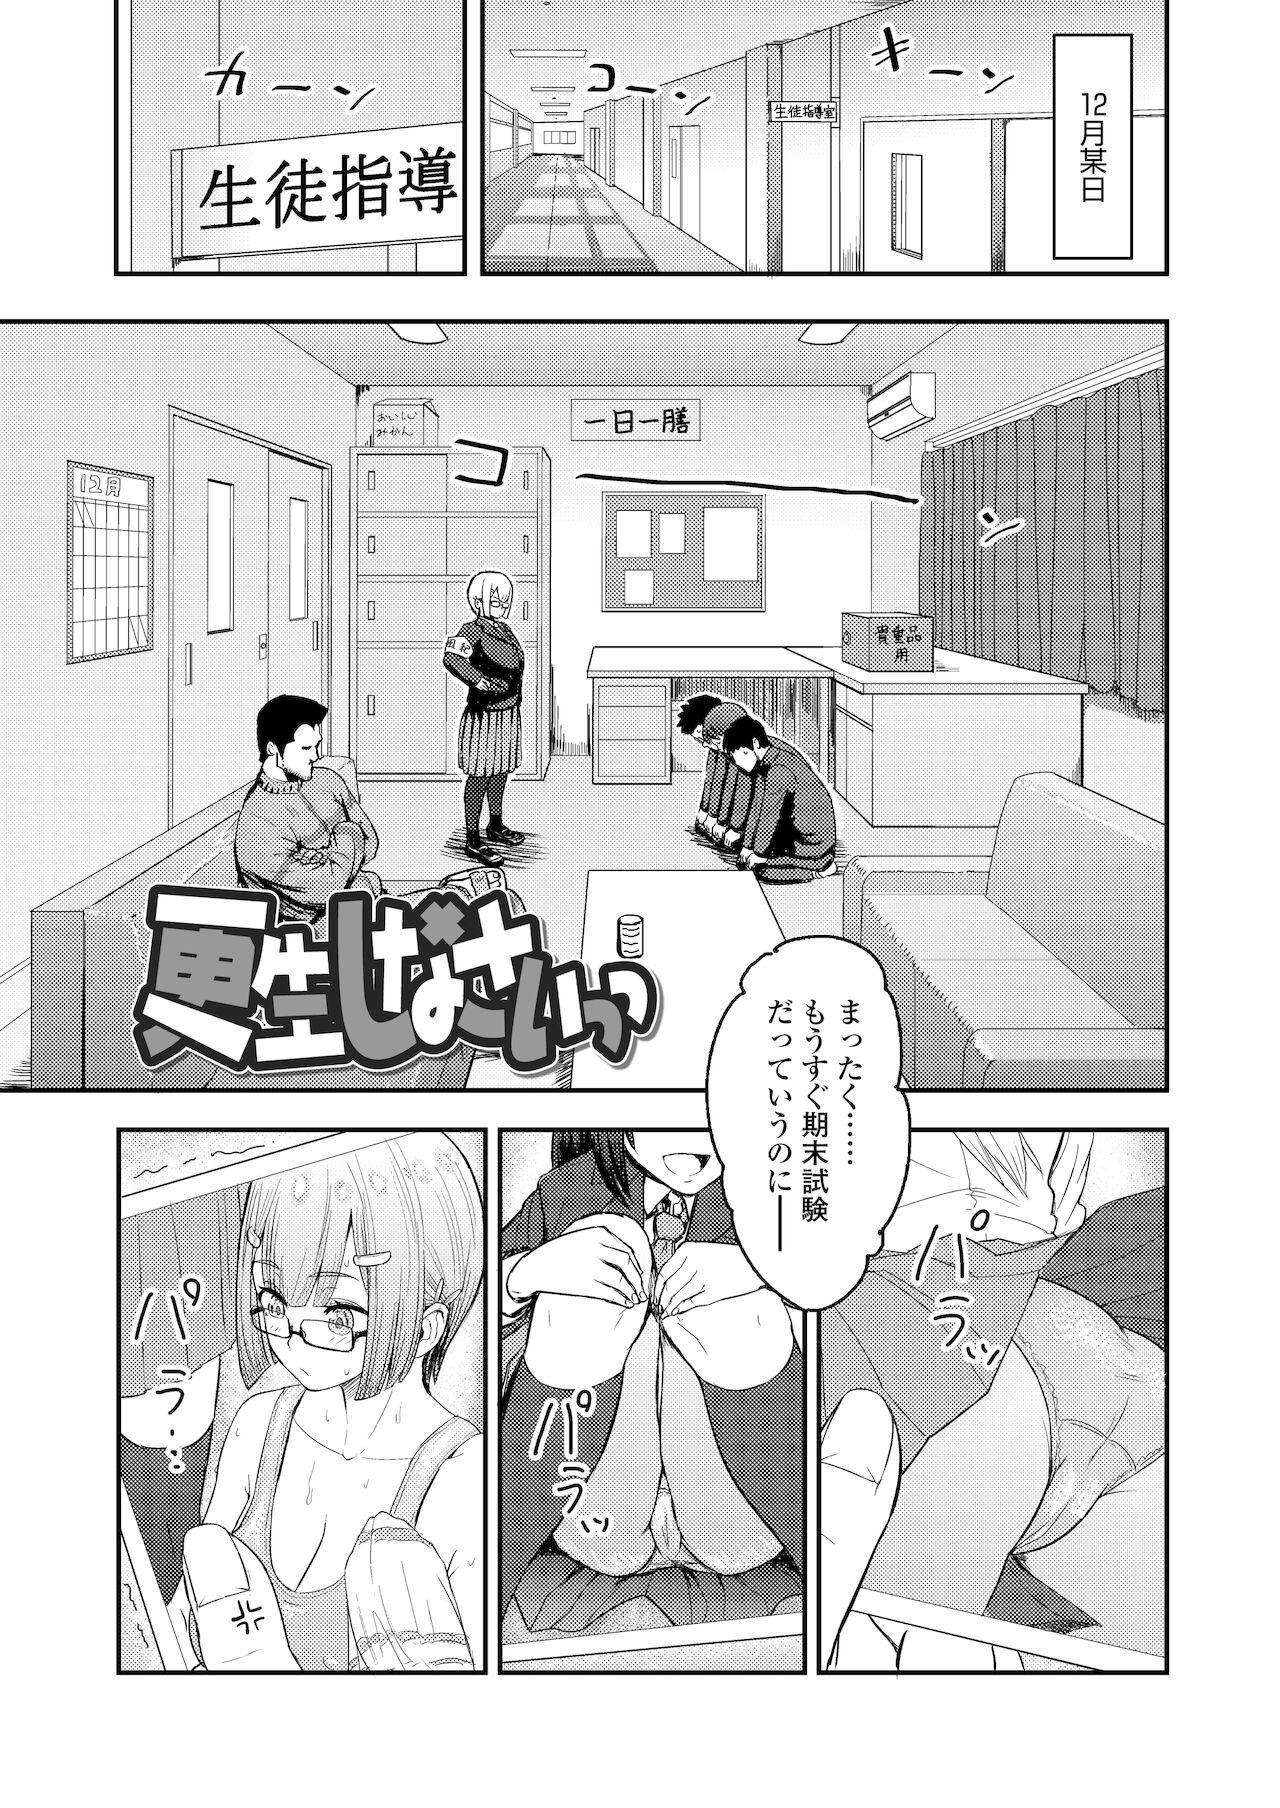 Rubbing Honto Otokotte Kedamono Nandakara Titjob - Page 3